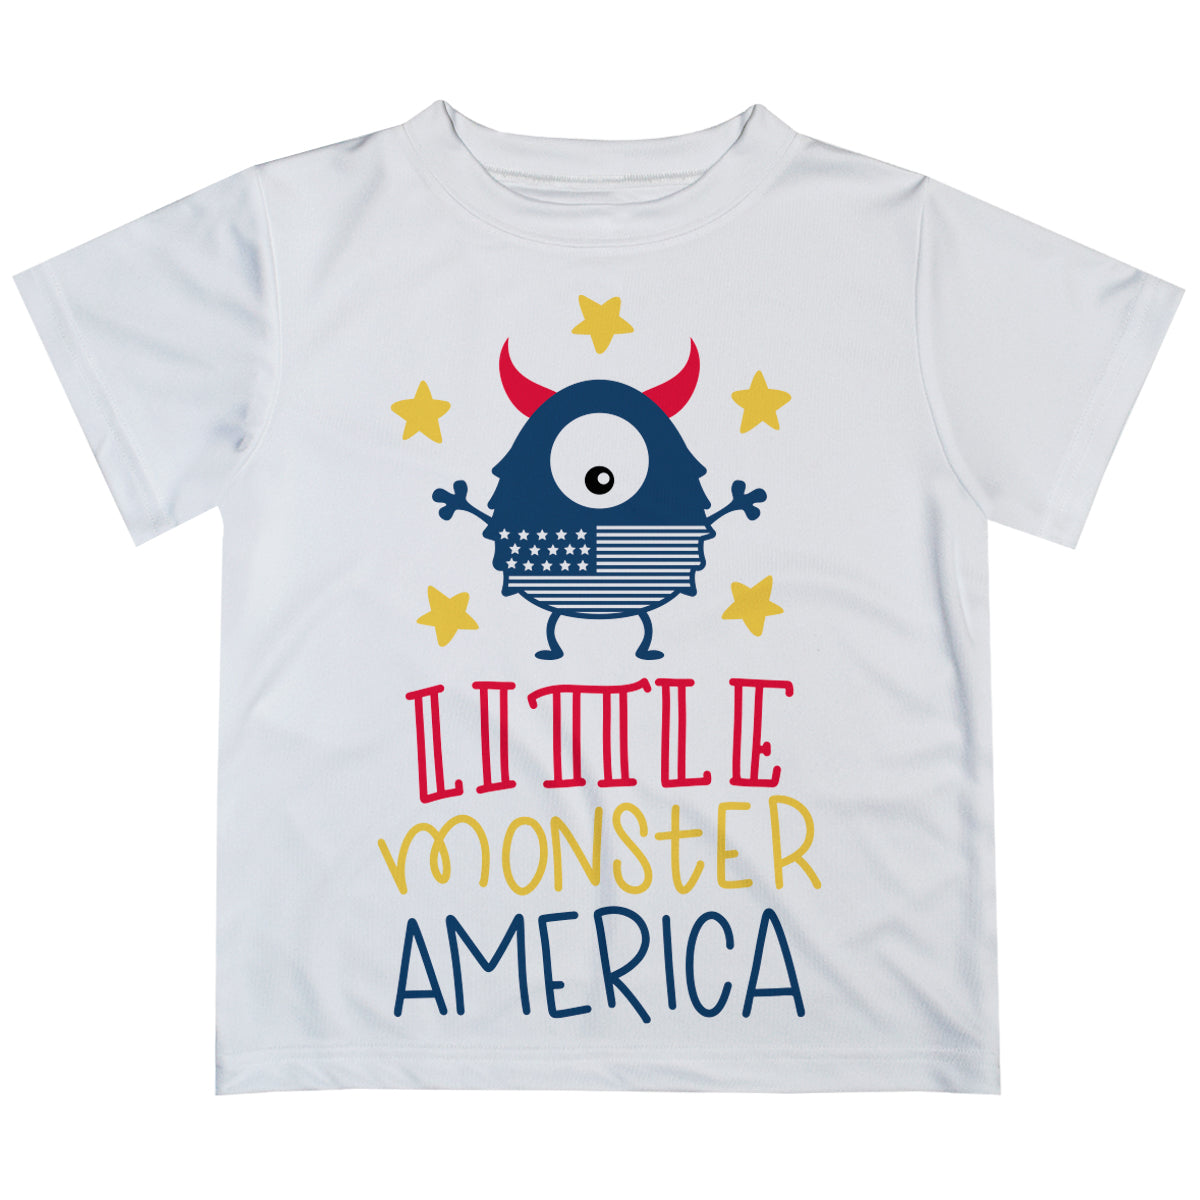 Little Monster America White Short Sleeve Tee Shirt